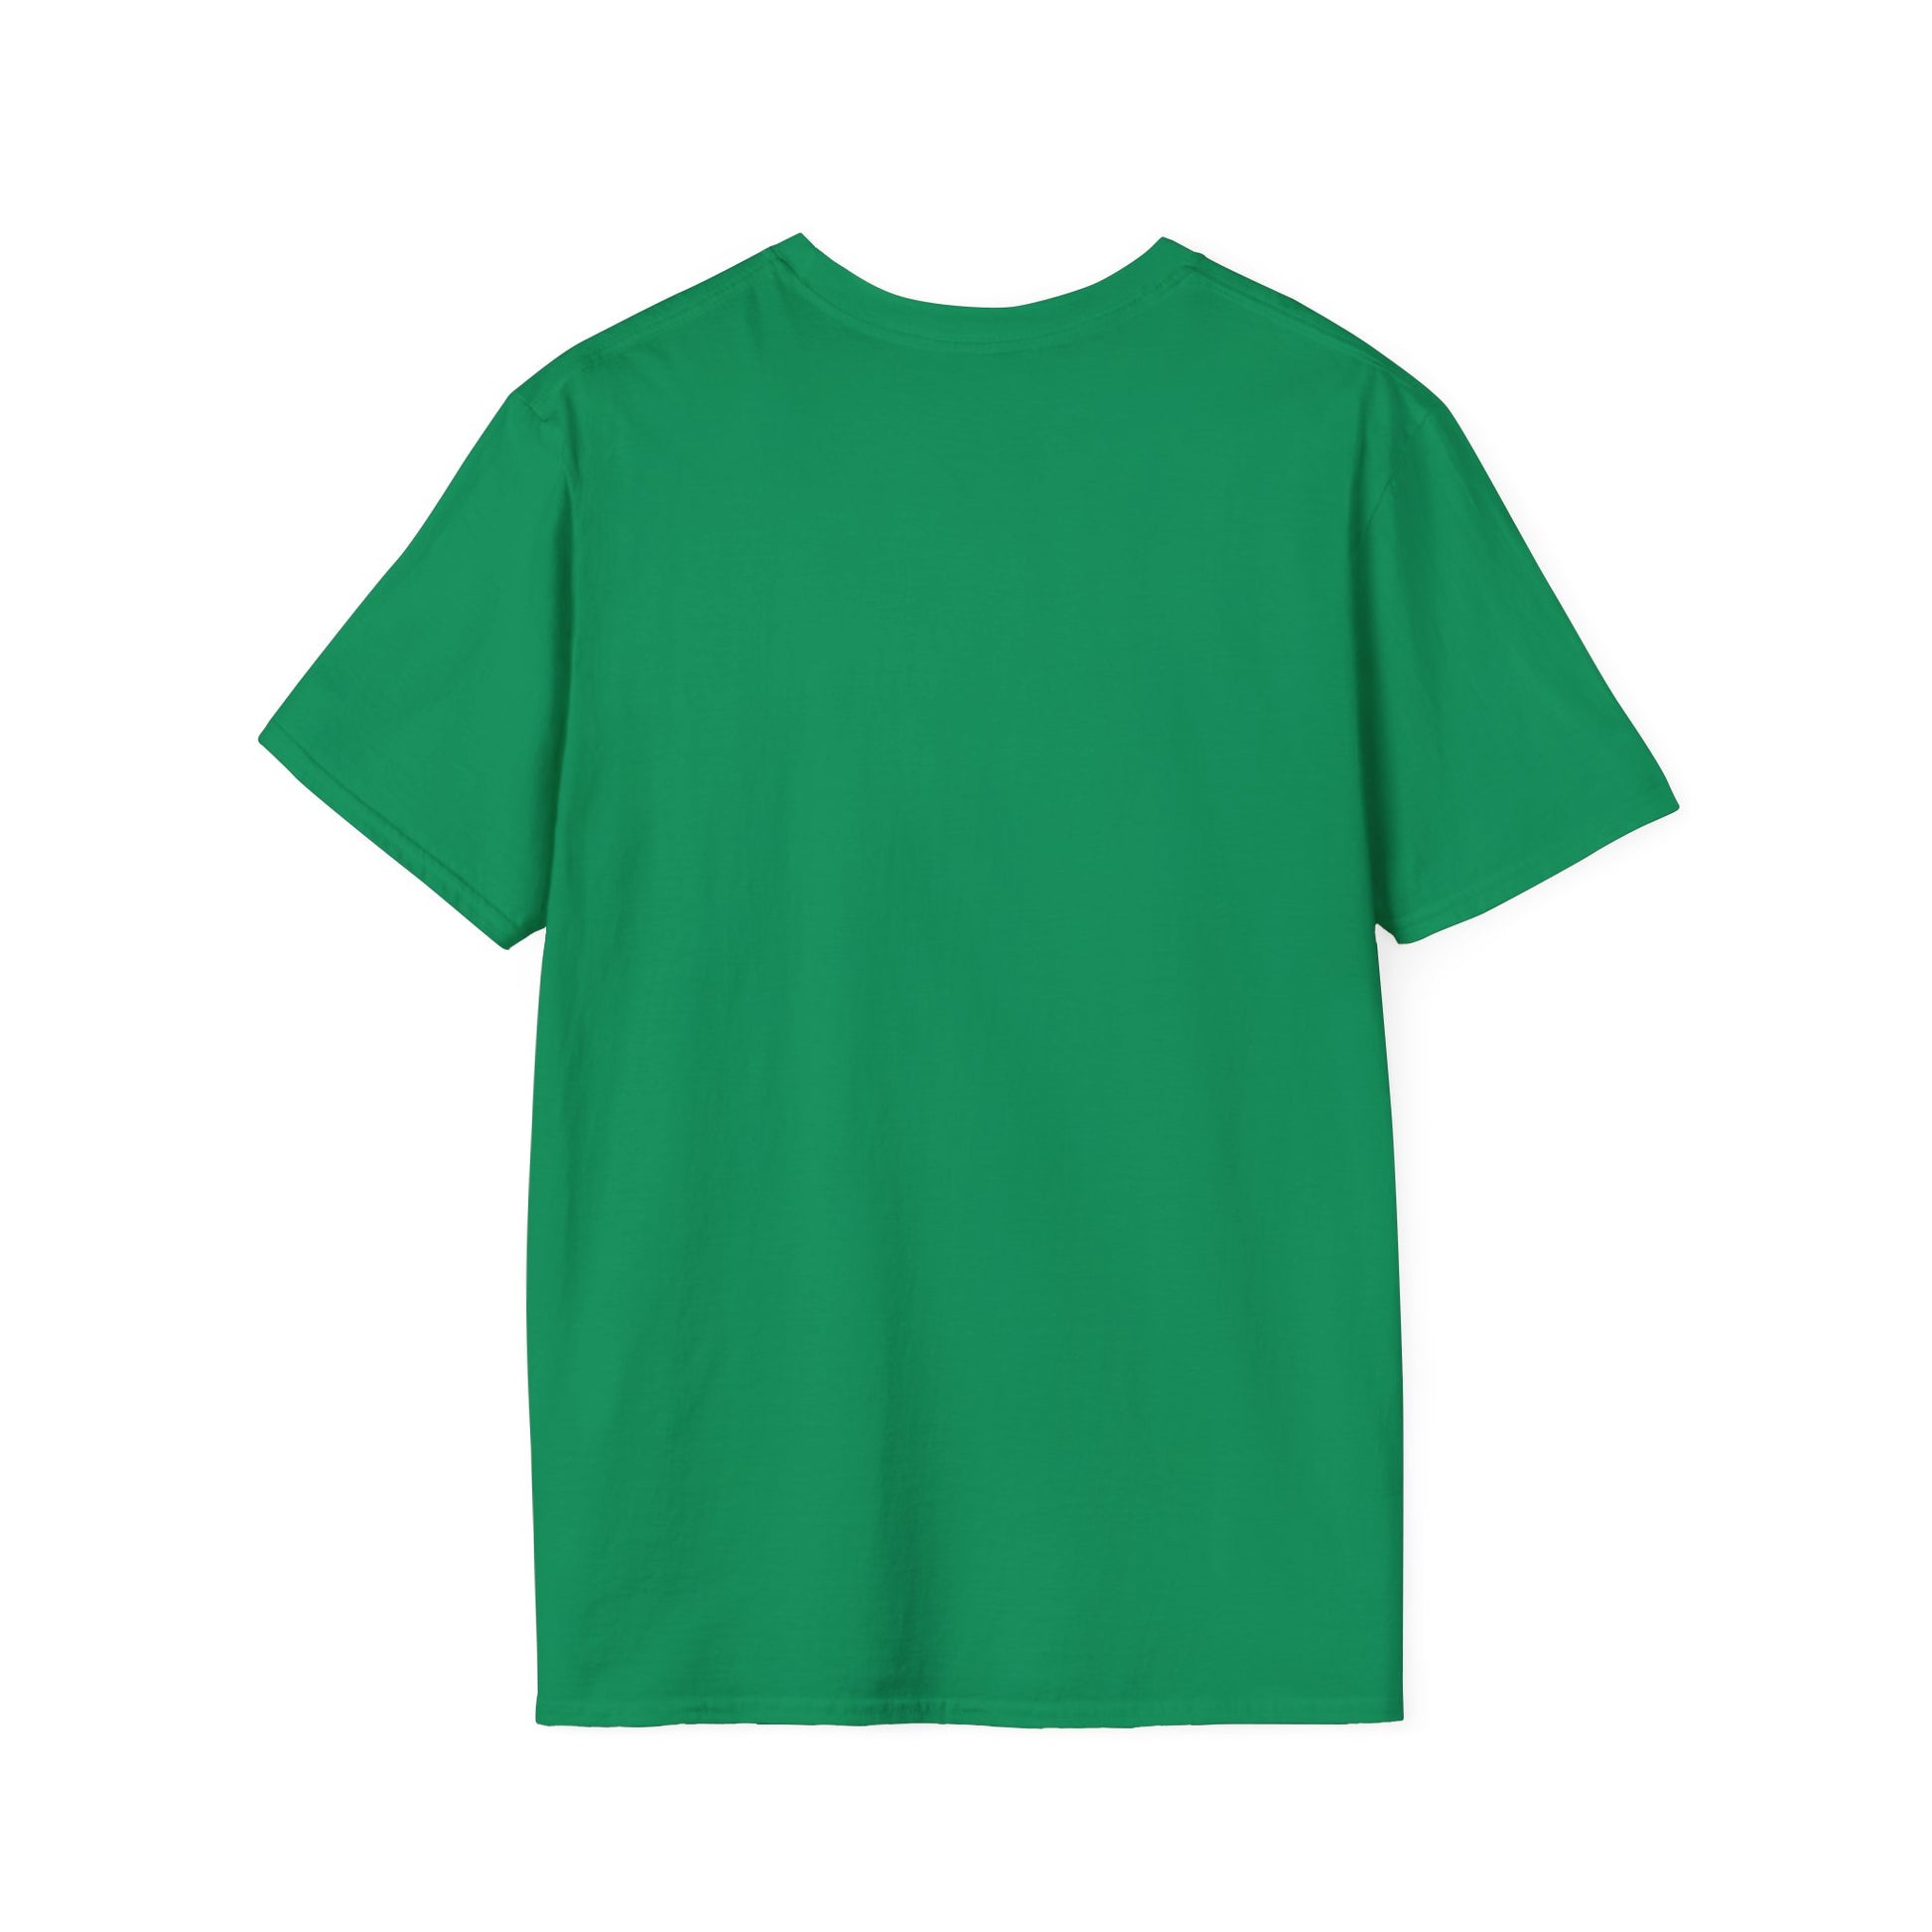 Unisex Soft-Style T-Shirt